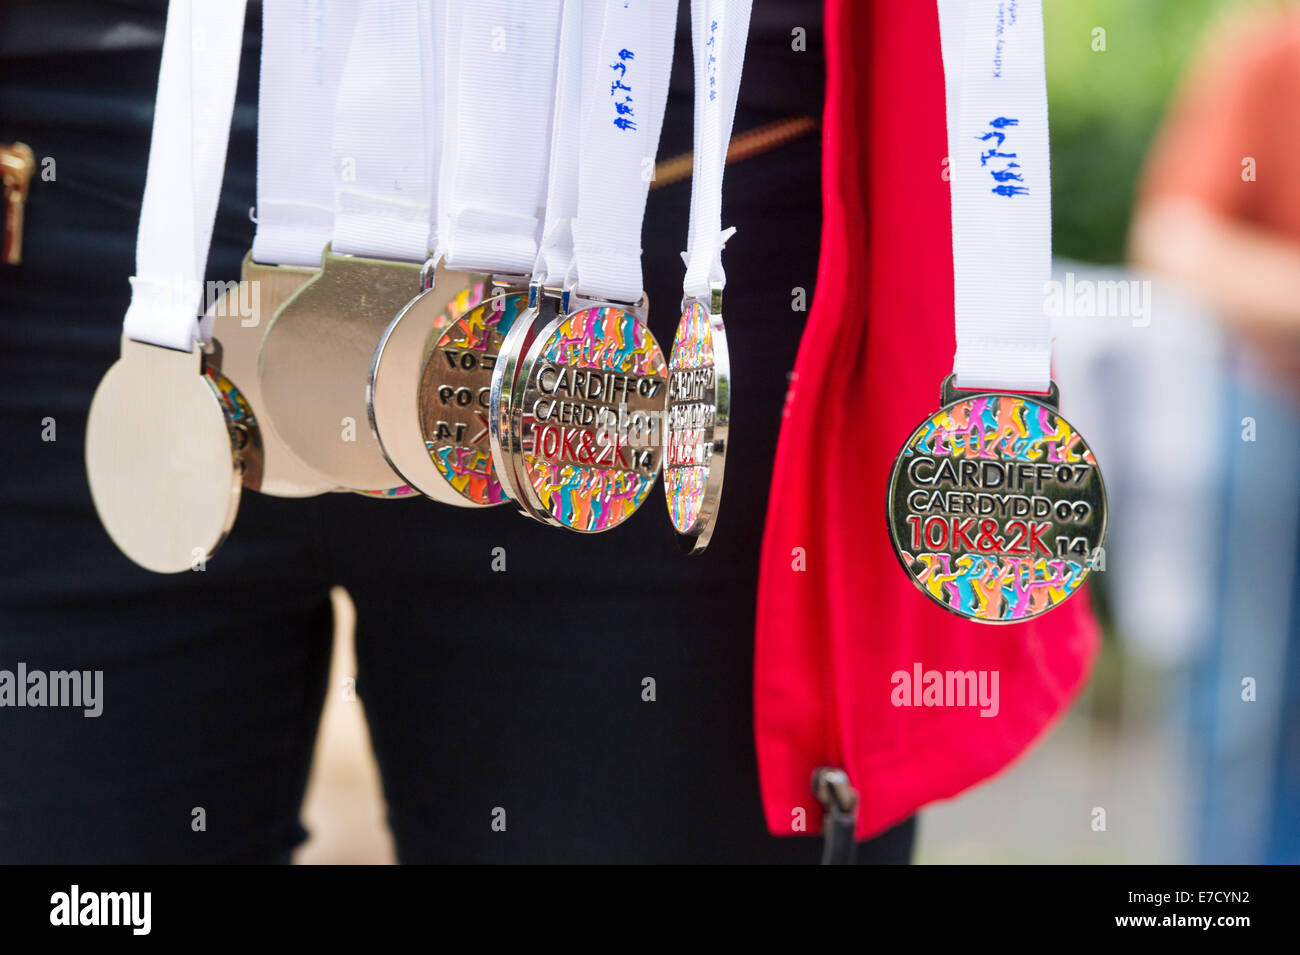 Medaillen aus dem jährlichen Cardiff 10k Rennen bereit, ausgehändigt werden. Stockfoto